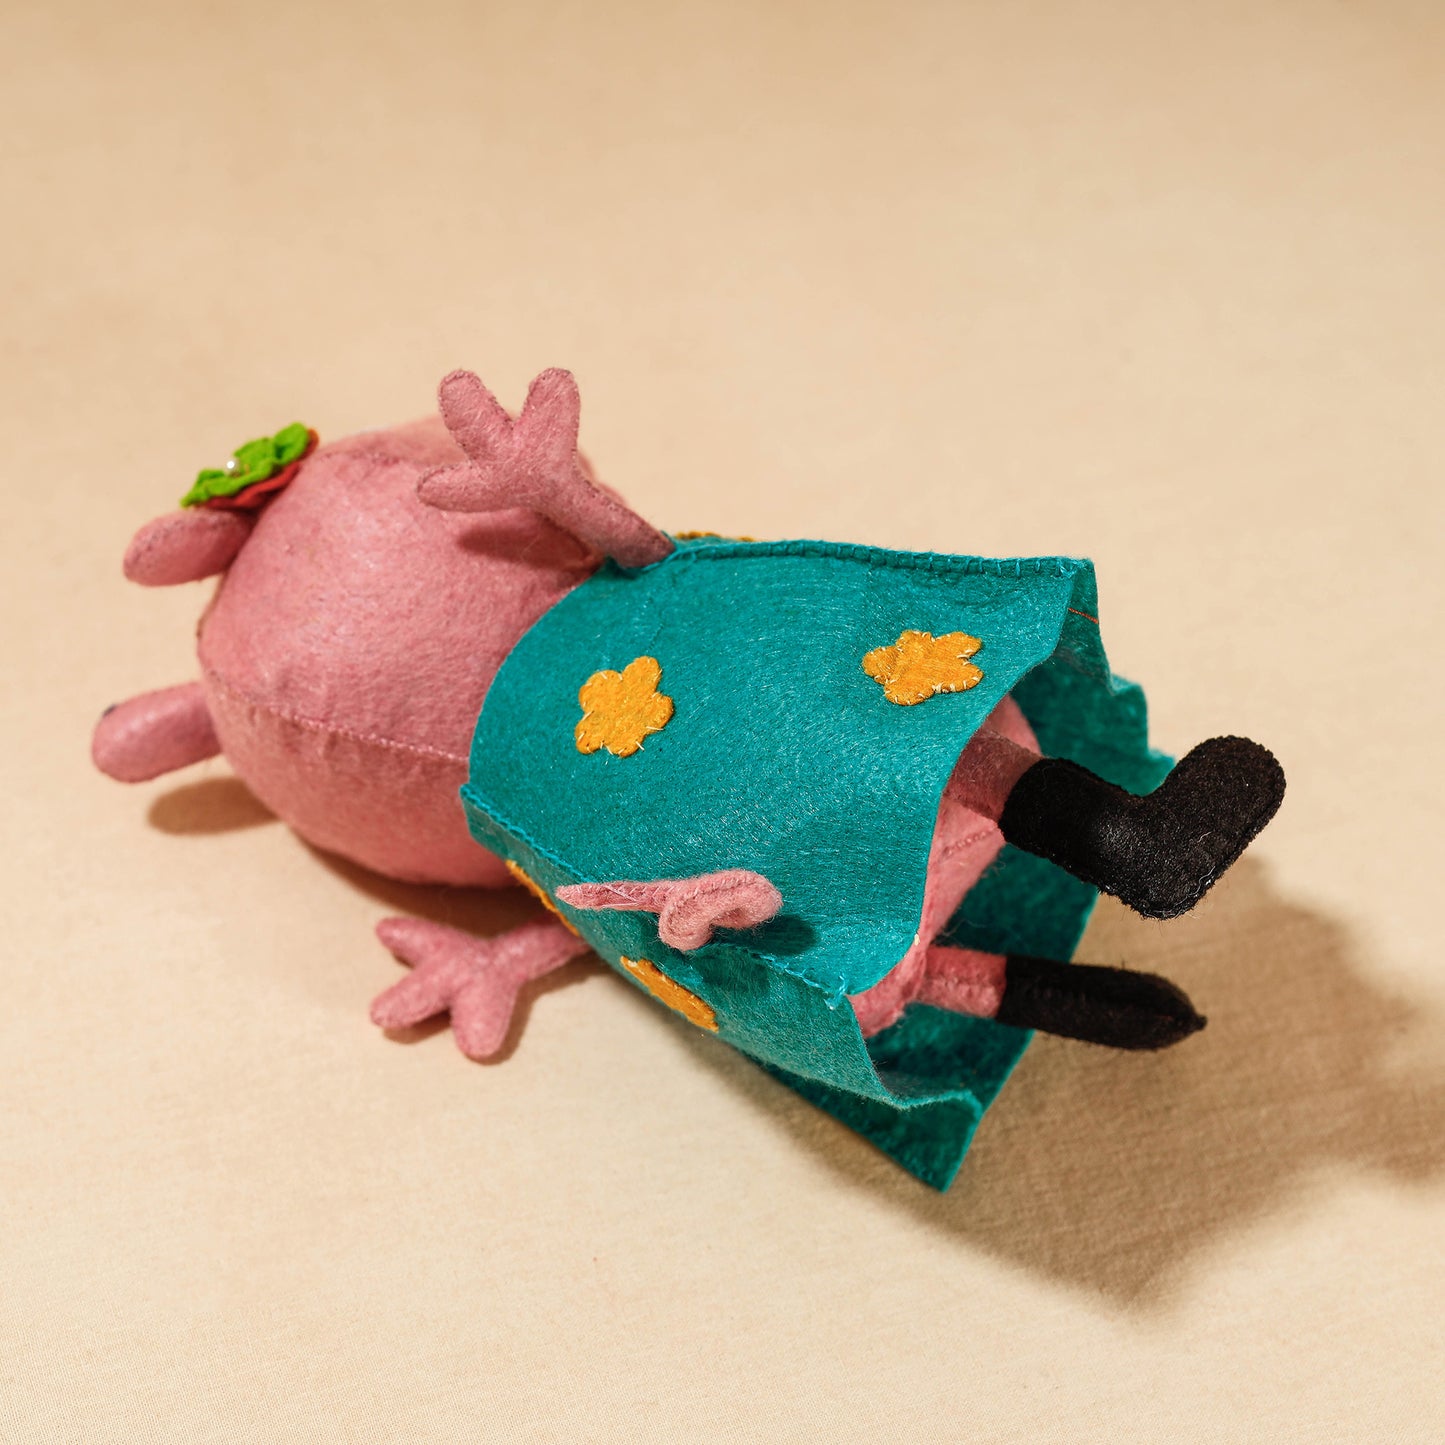 Mummy Piggie - Handmade Felt Work Stuffed Soft Toy